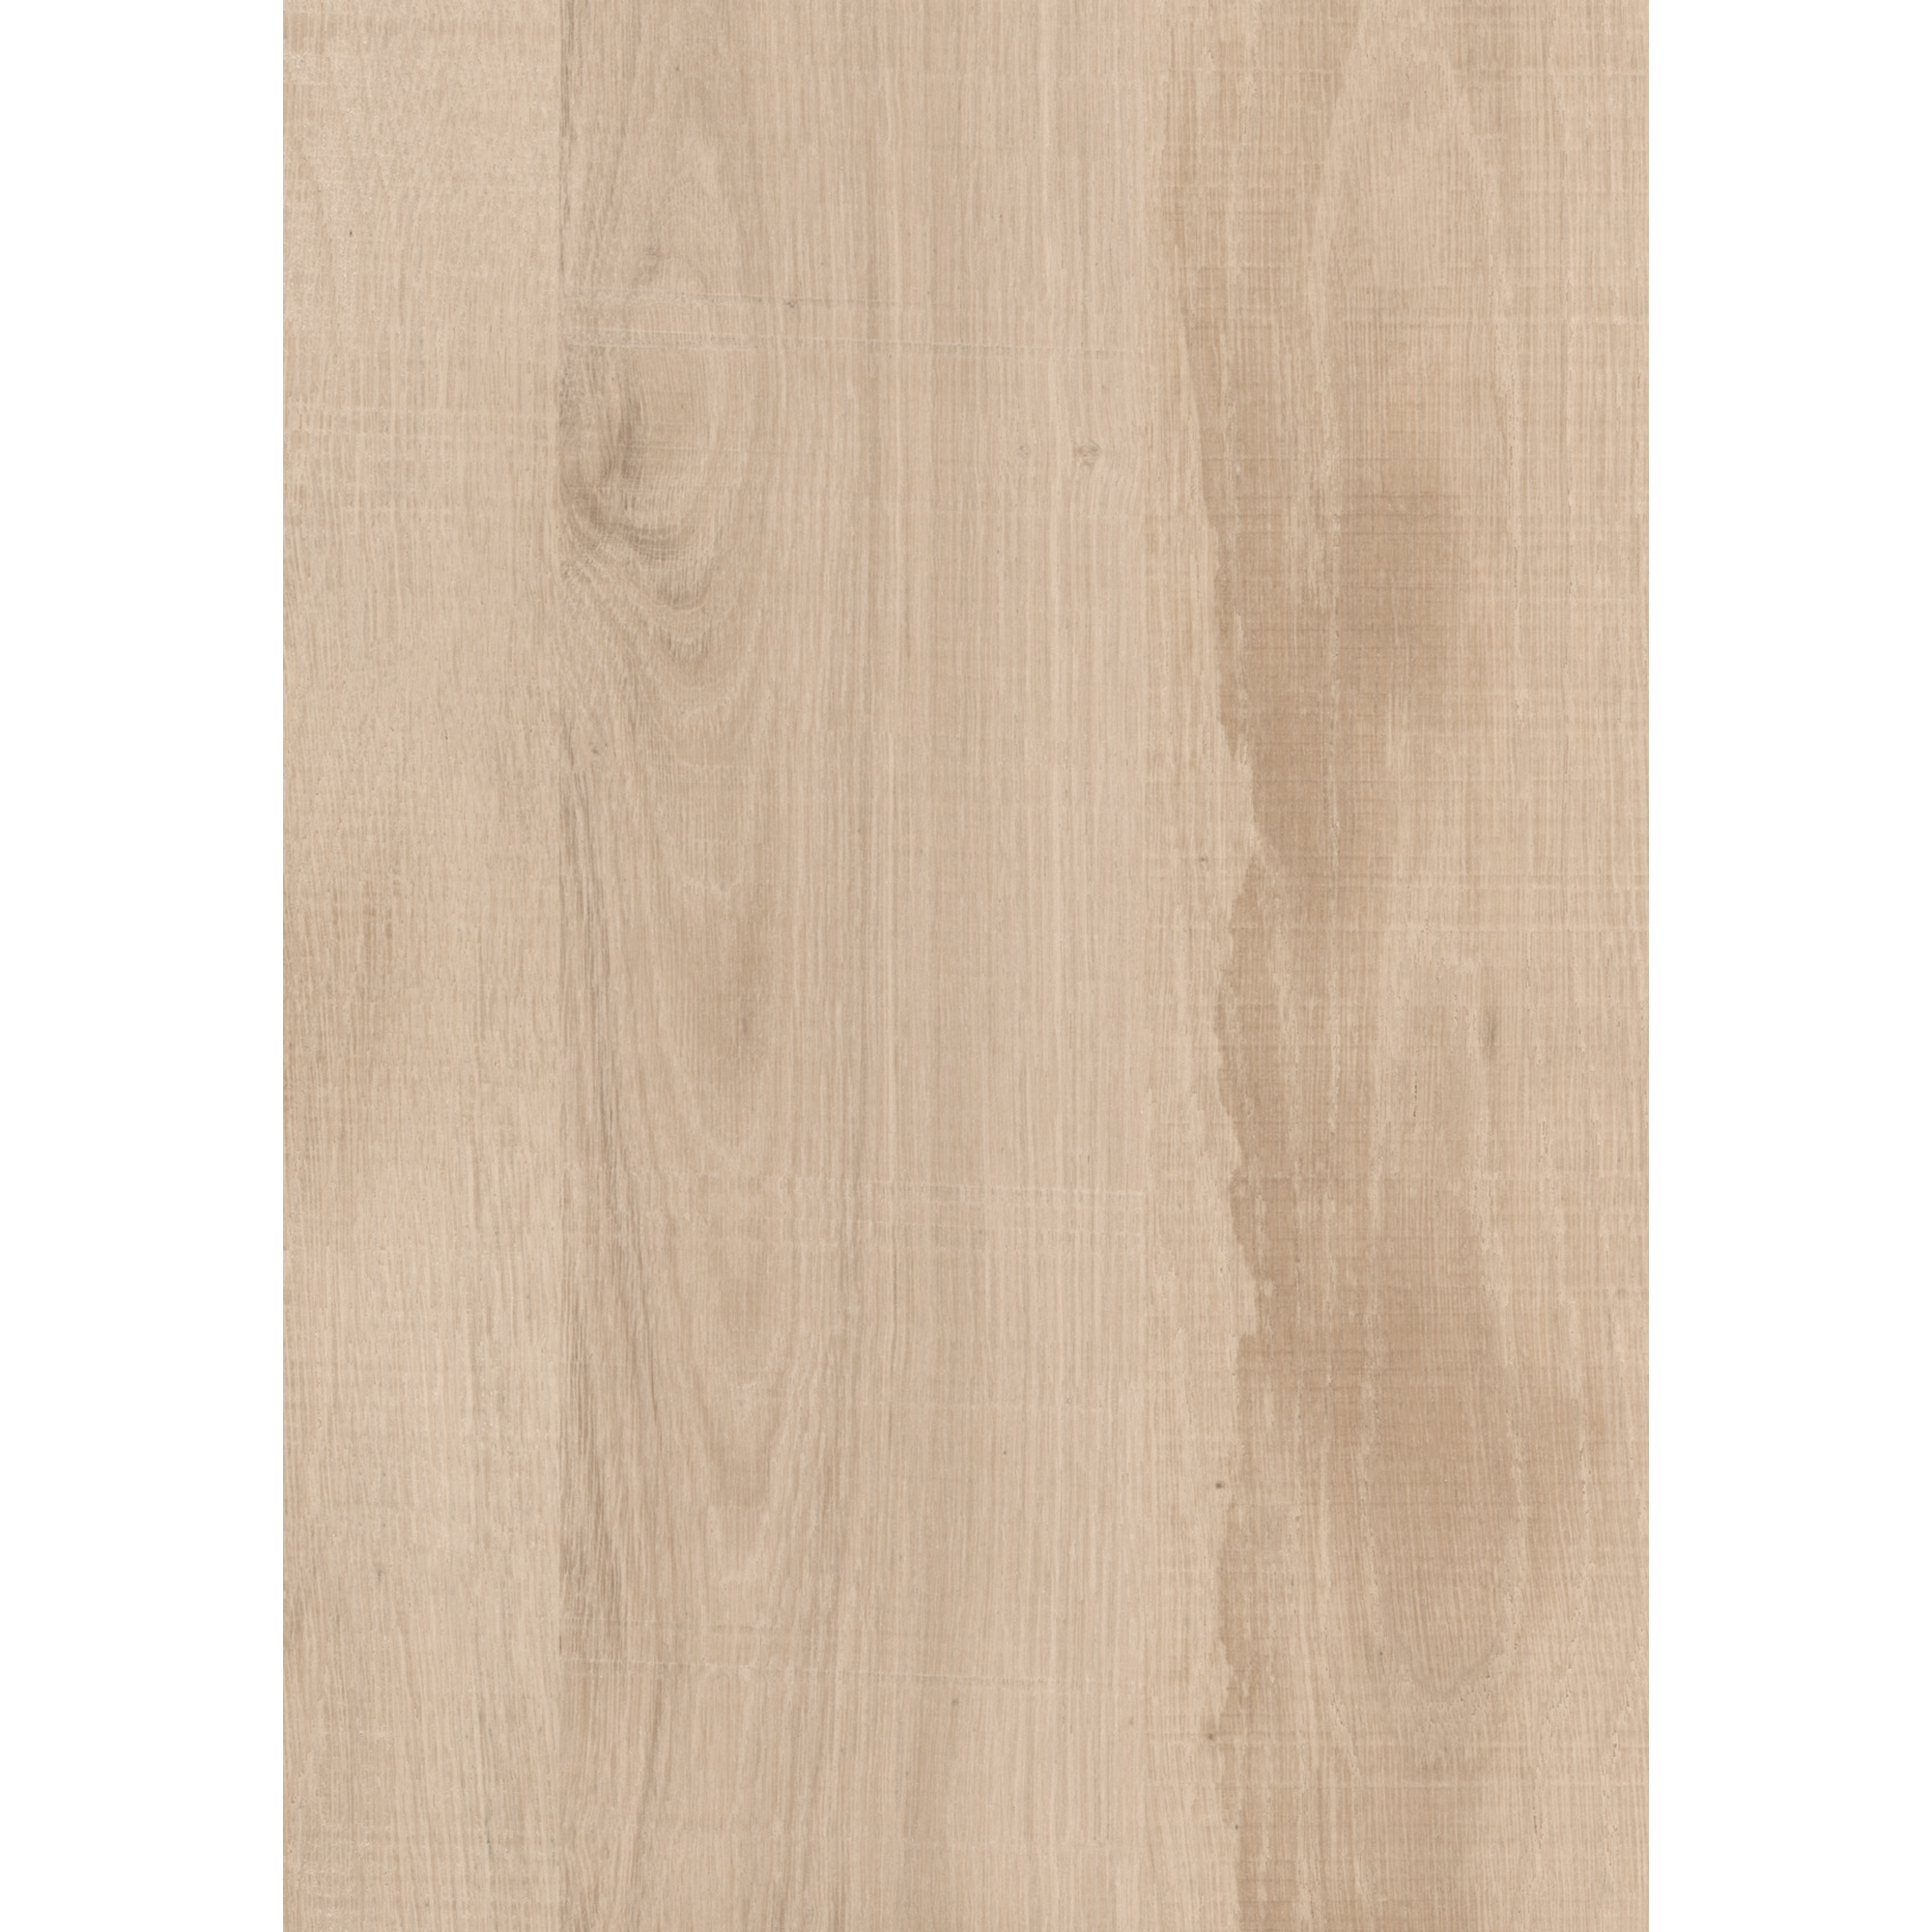 Küchenrückwand 'K4410/45274' Native Oak Light beige/Cortenstahl braun, beidseitiges Dekor 4100 x 640 x 15 mm + product picture